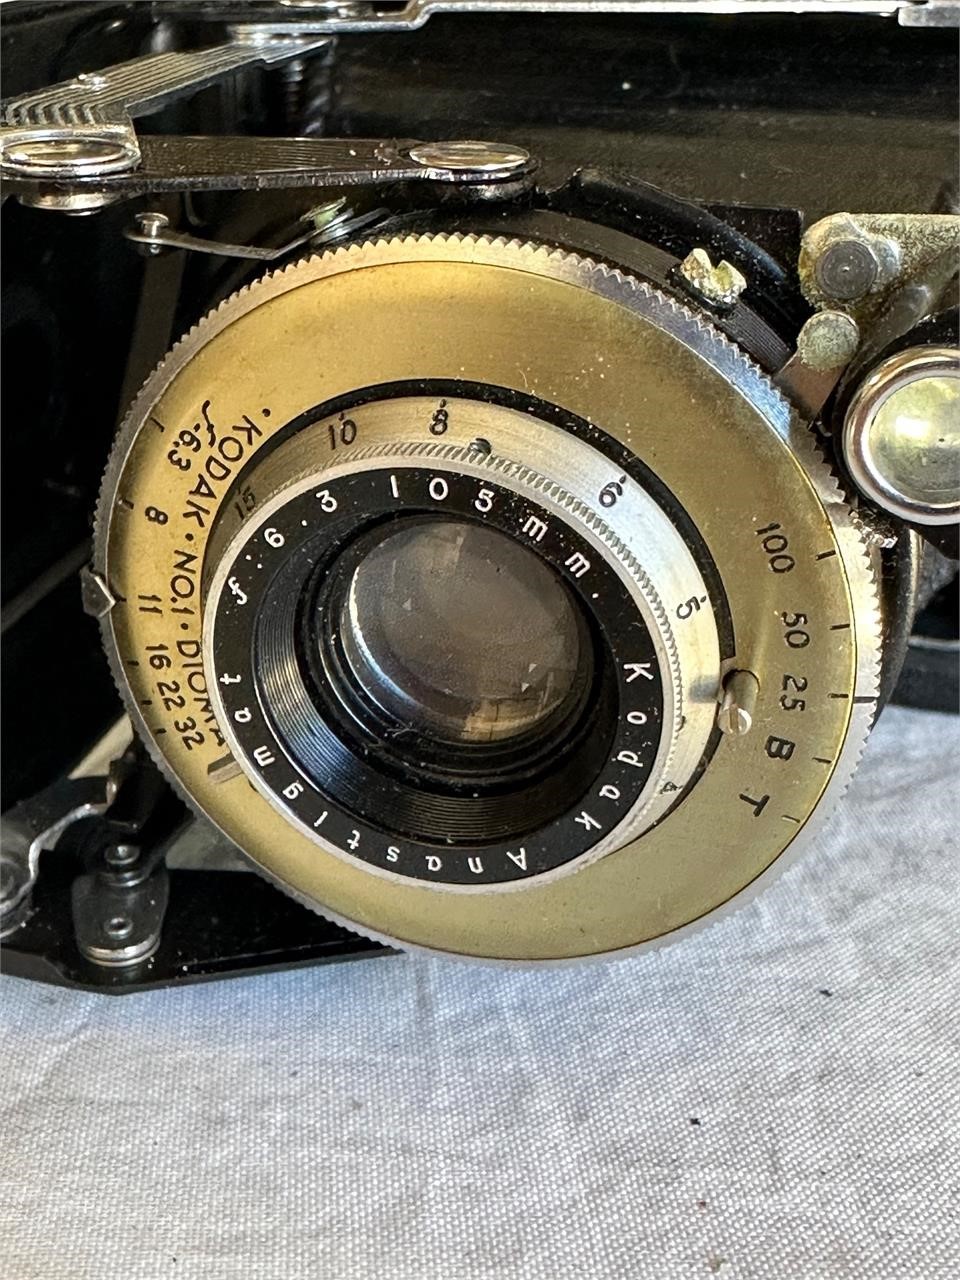 VTG Kodak Vigilant Six-20 Folding Film Camera